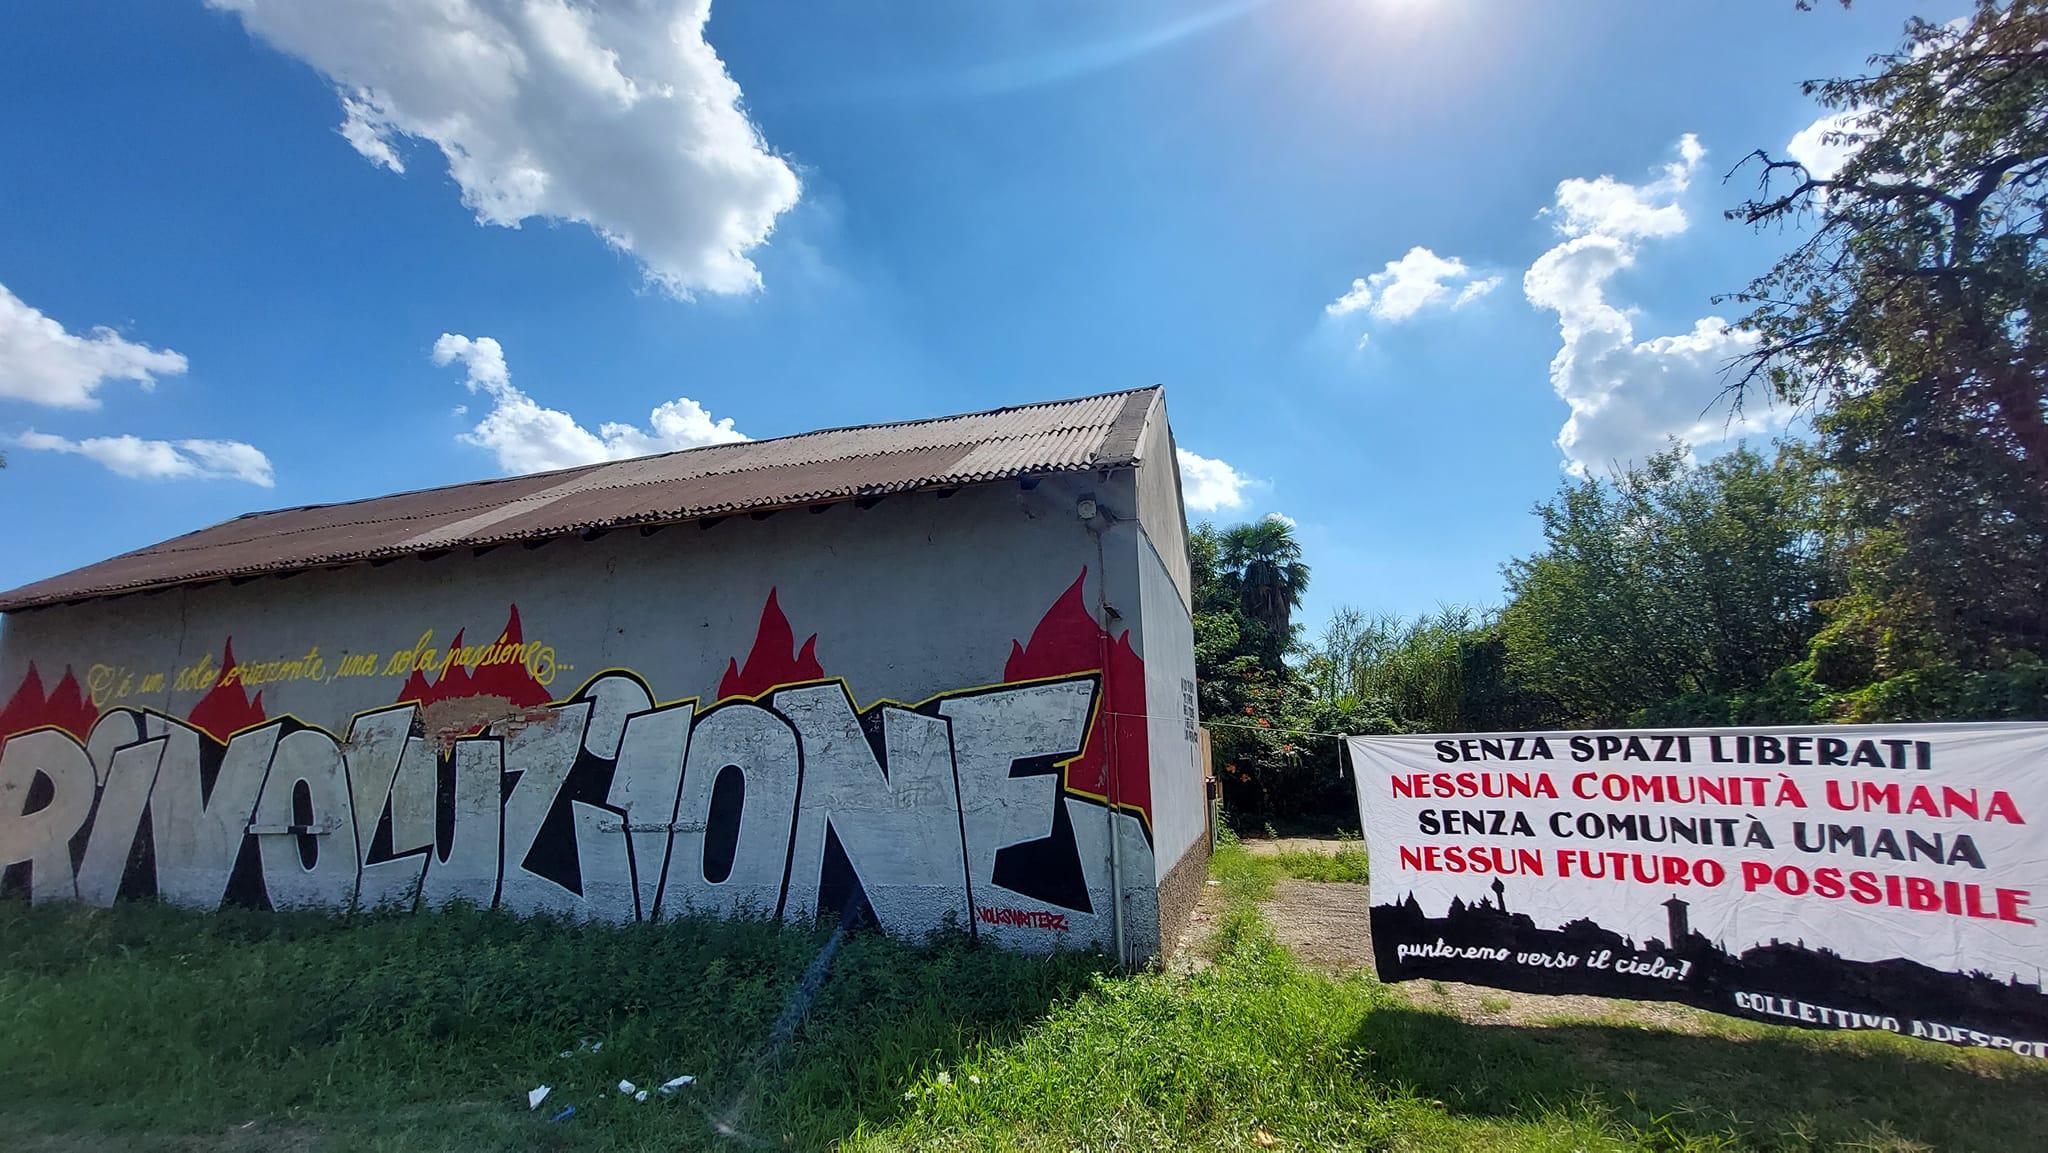 Occupazione del Collettivo Adespota: notte punk hardcore a Saronno sud